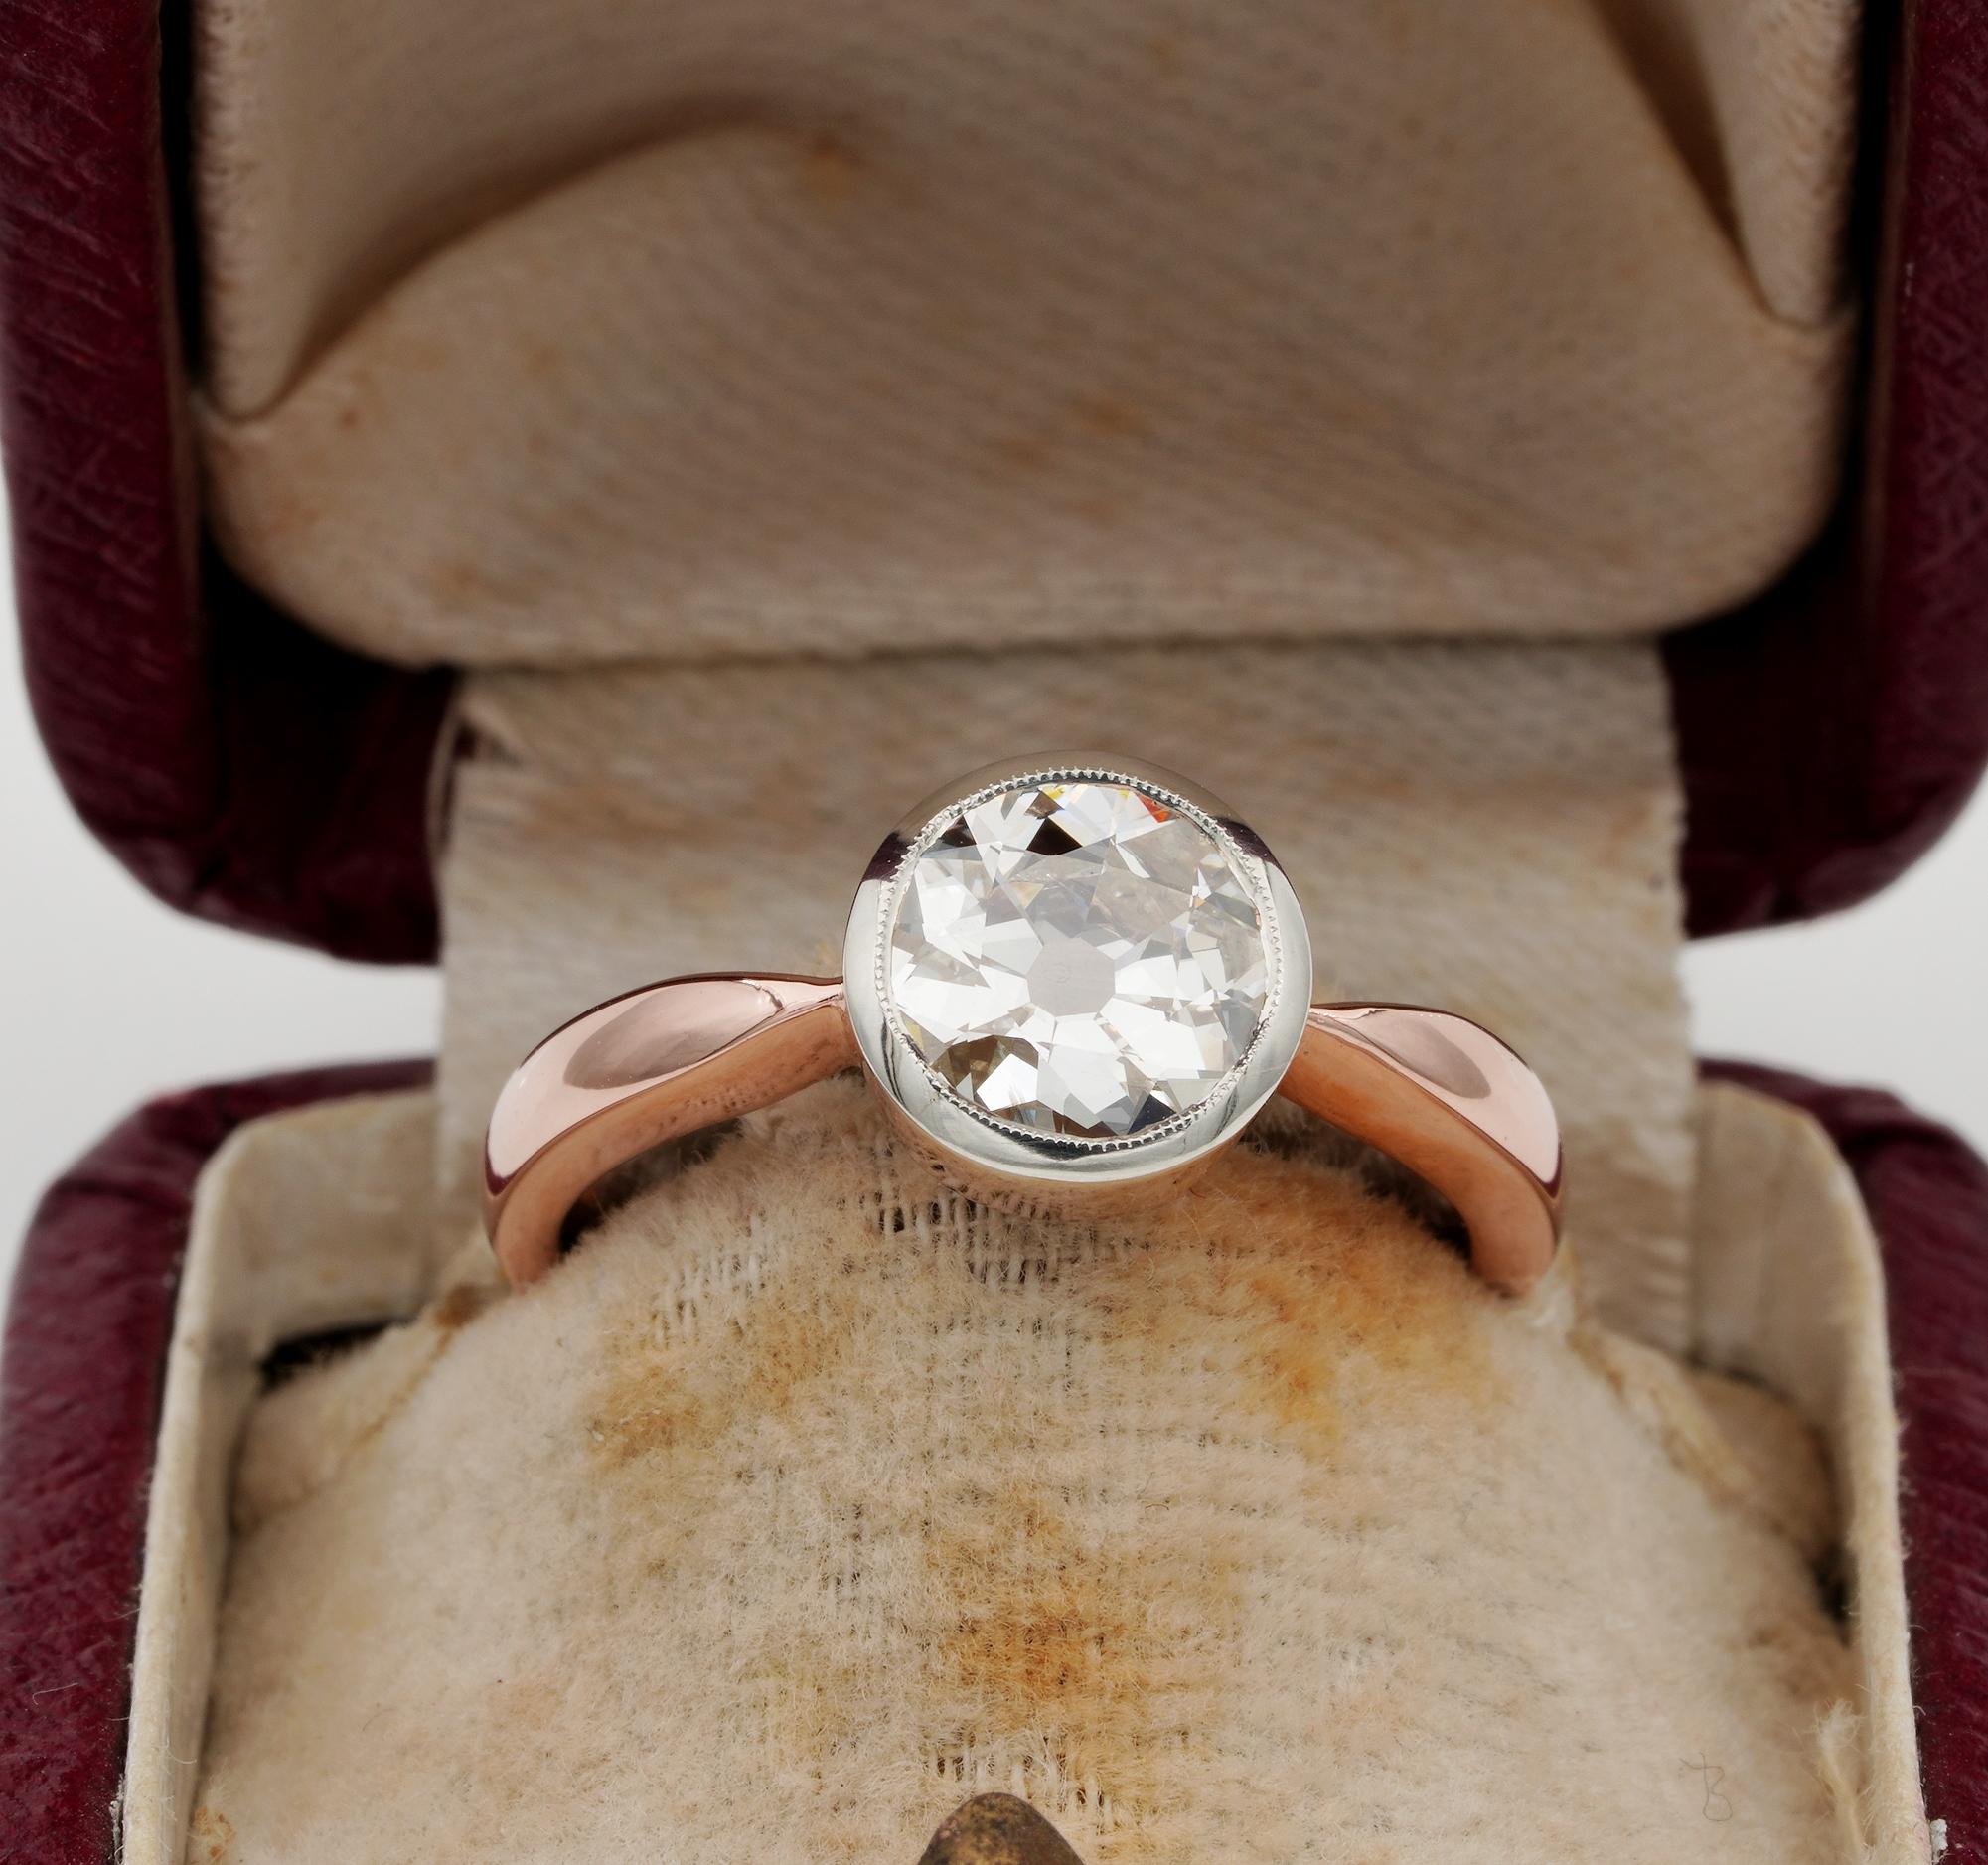 Cette remarquable bague solitaire à diamant rétro est datée des années 1940/45.
Il a été réalisé à la main en or massif 18 carats.
La monture habilement réalisée est faite pour exalter au mieux le grand solitaire en diamant, lui donnant une grande